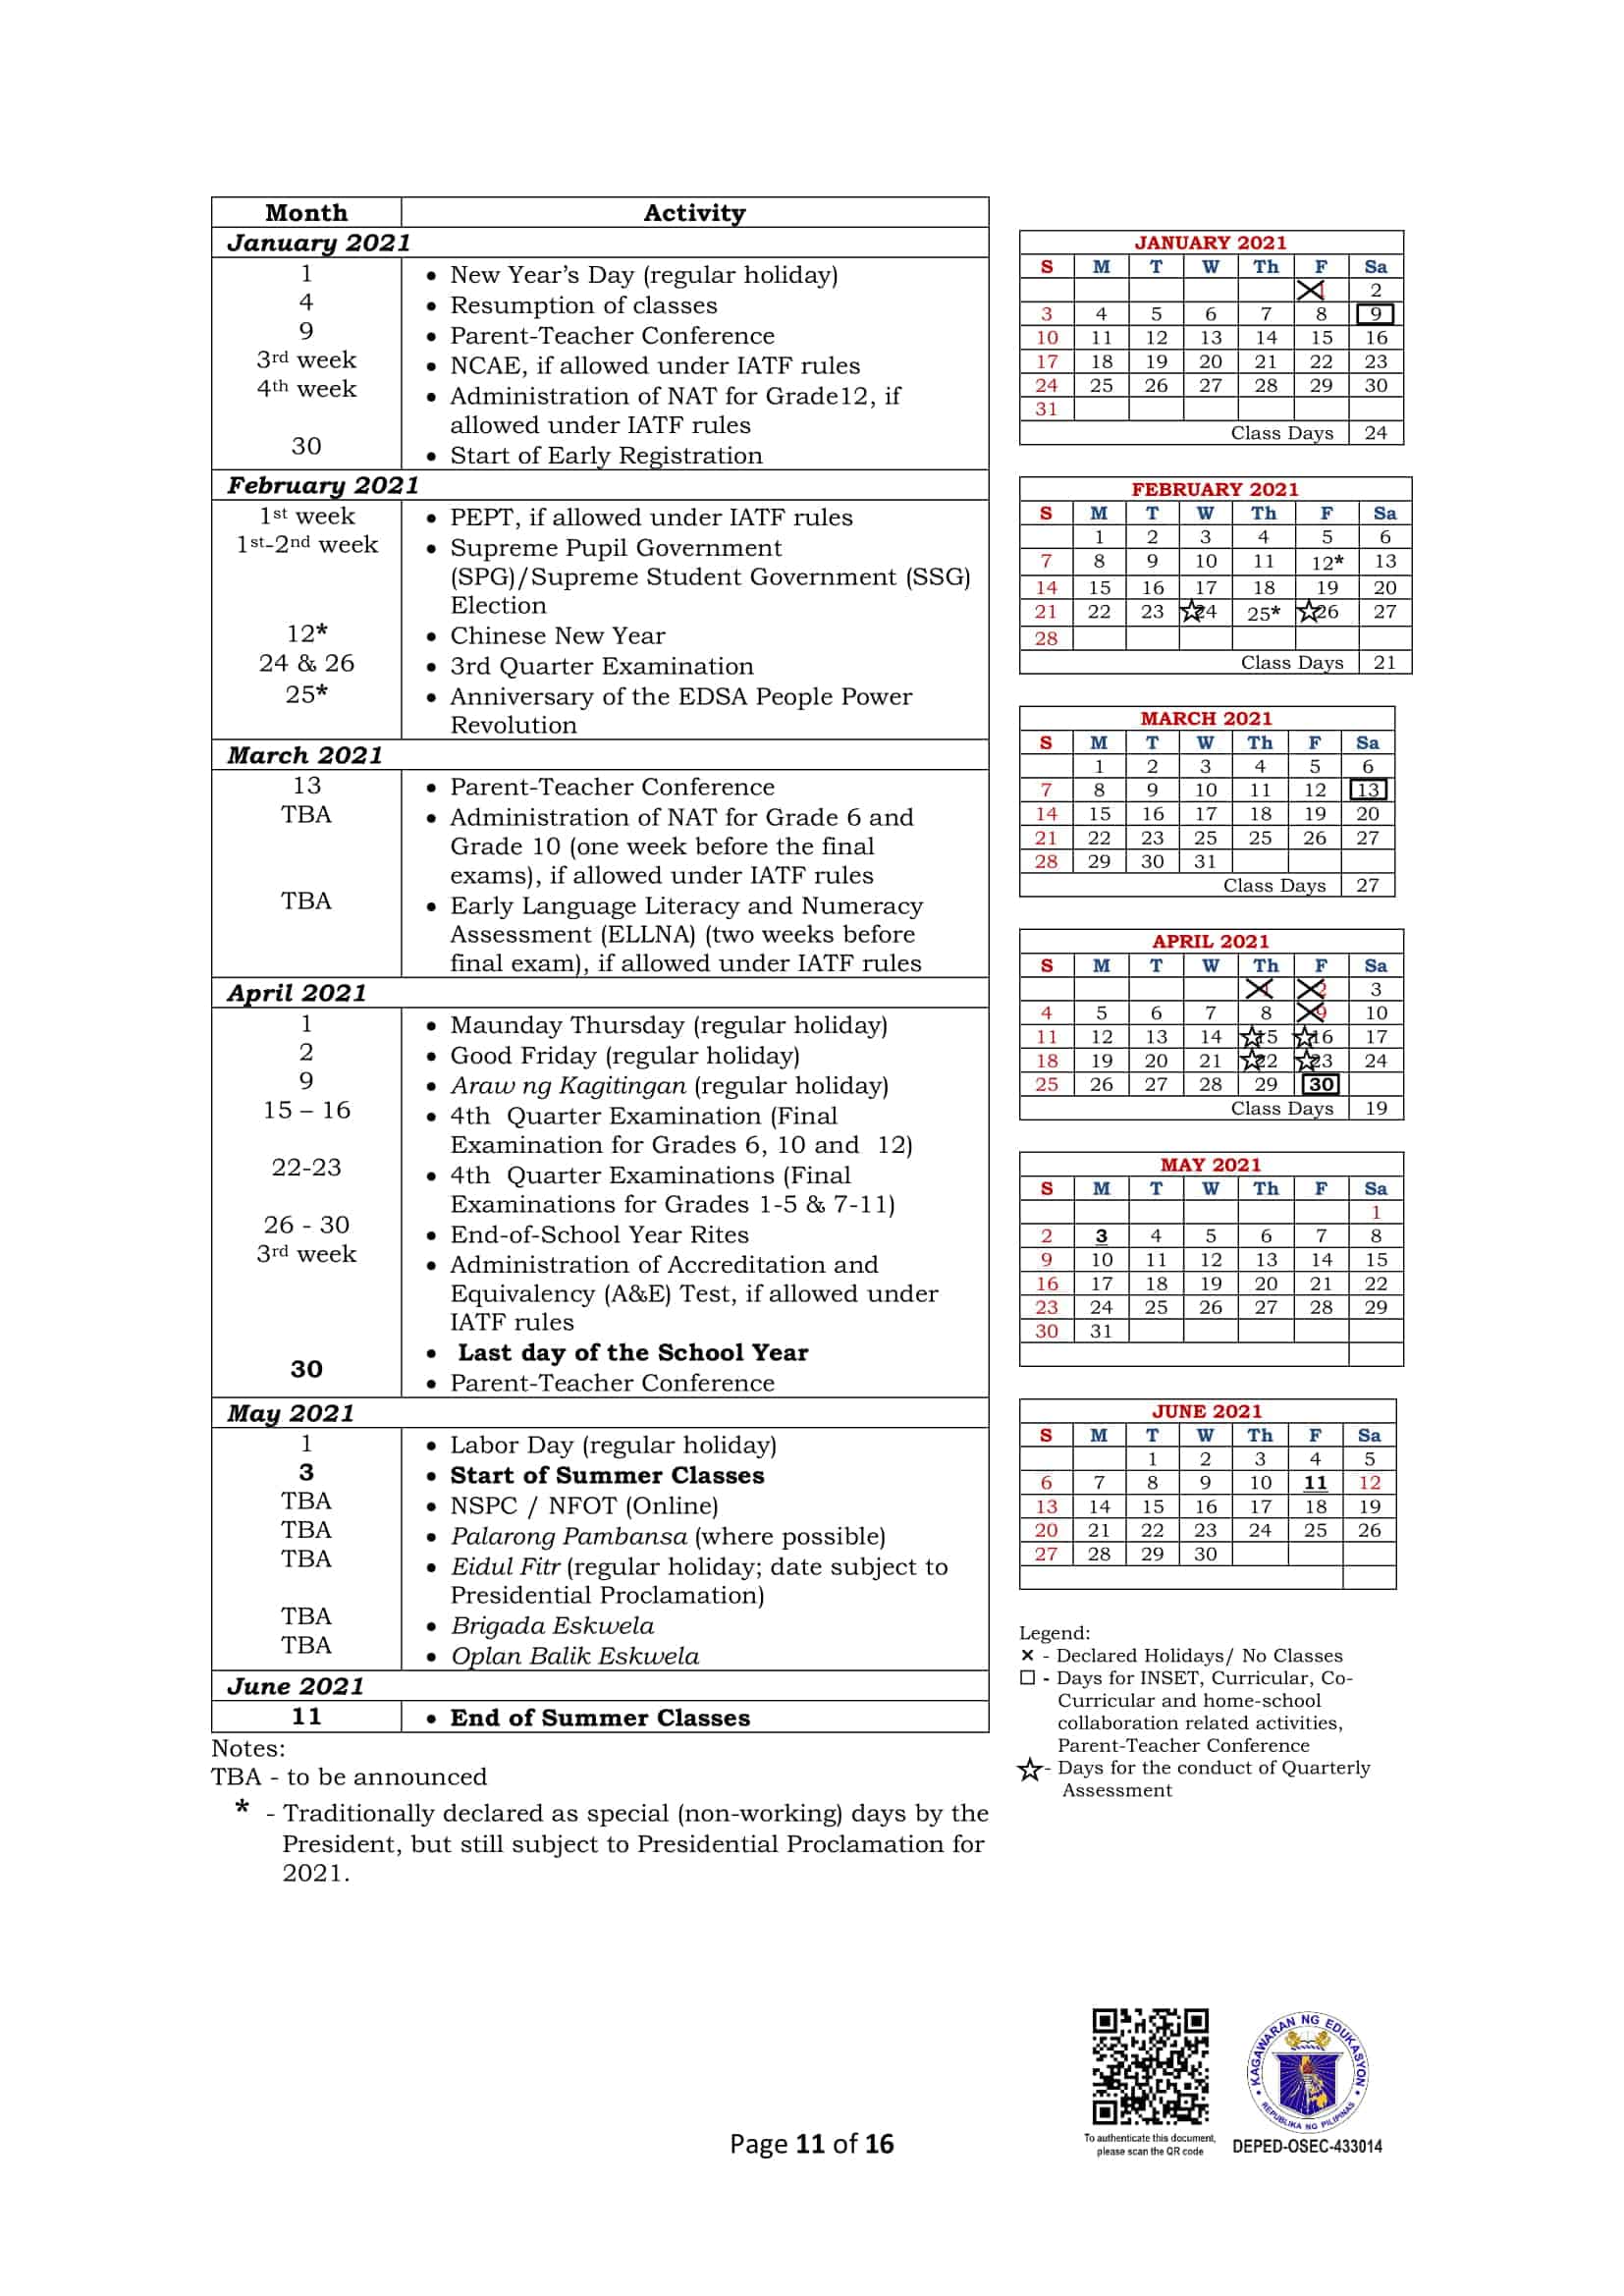 DepEd: Monthly School Calendar of Activities for School Year 2020-2021